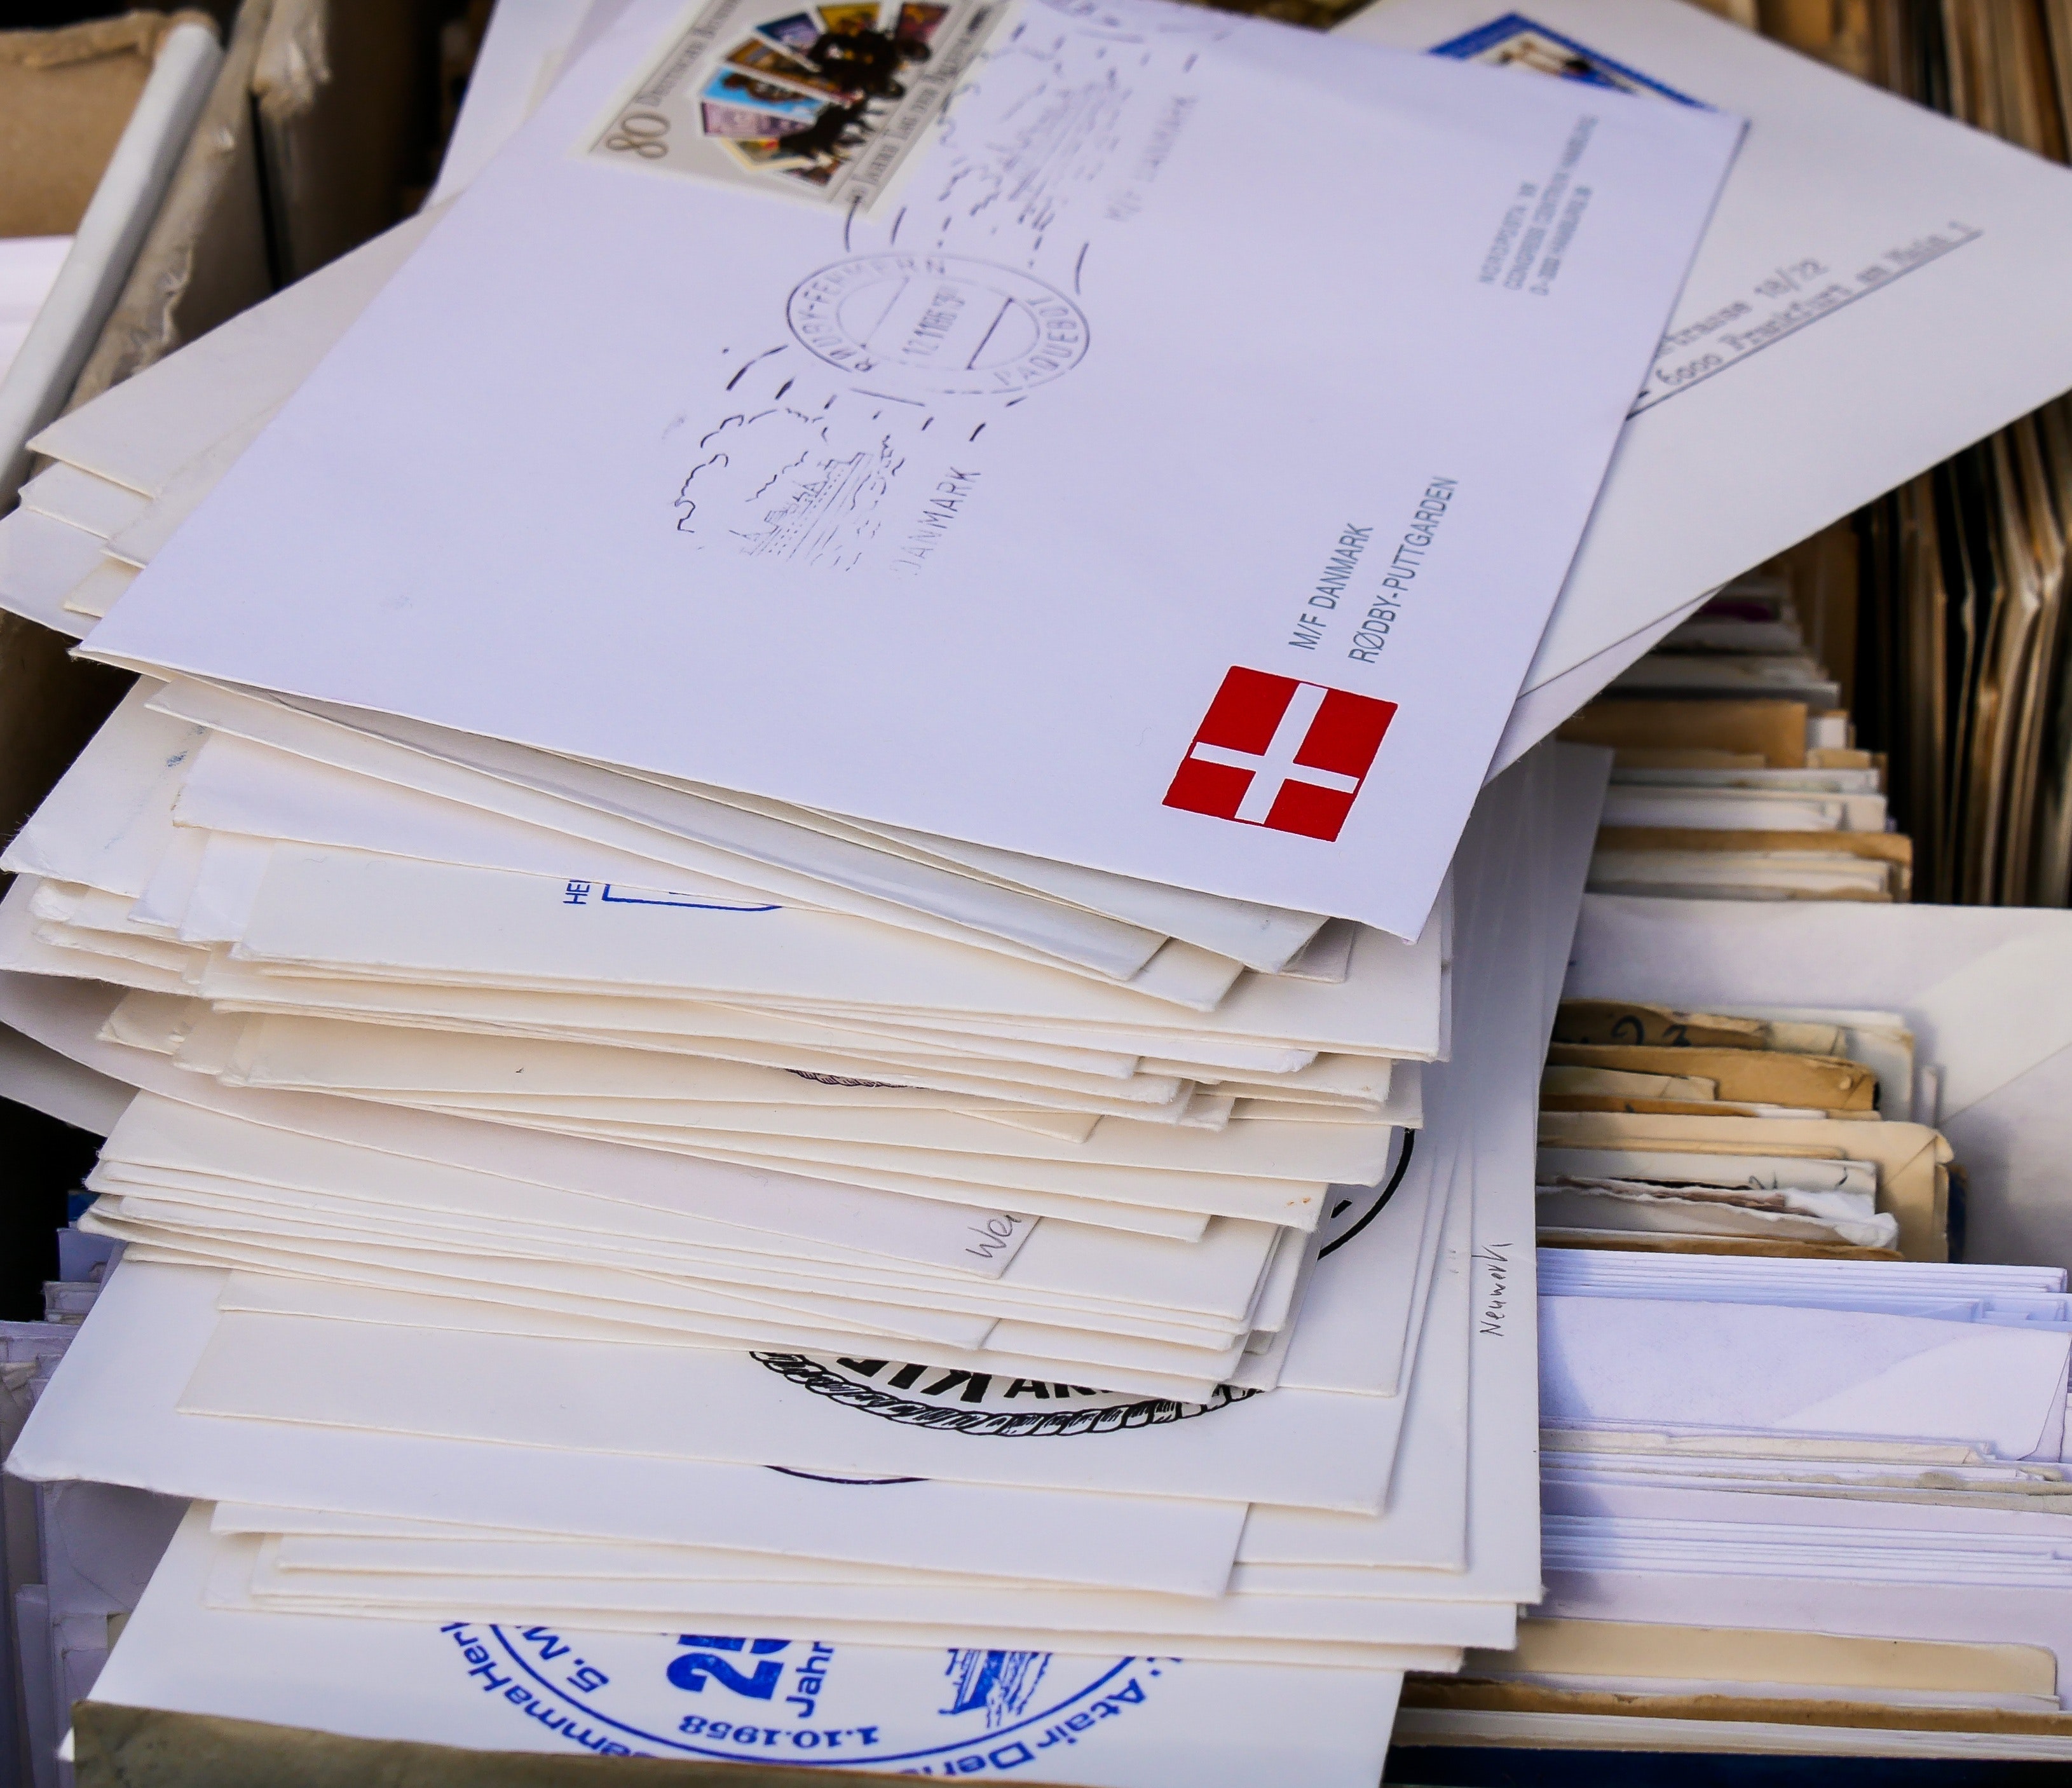 Portoerhöhung für Standardbriefe erhöht Verlust für Ärzte von 15 auf 25 Cent pro Brief